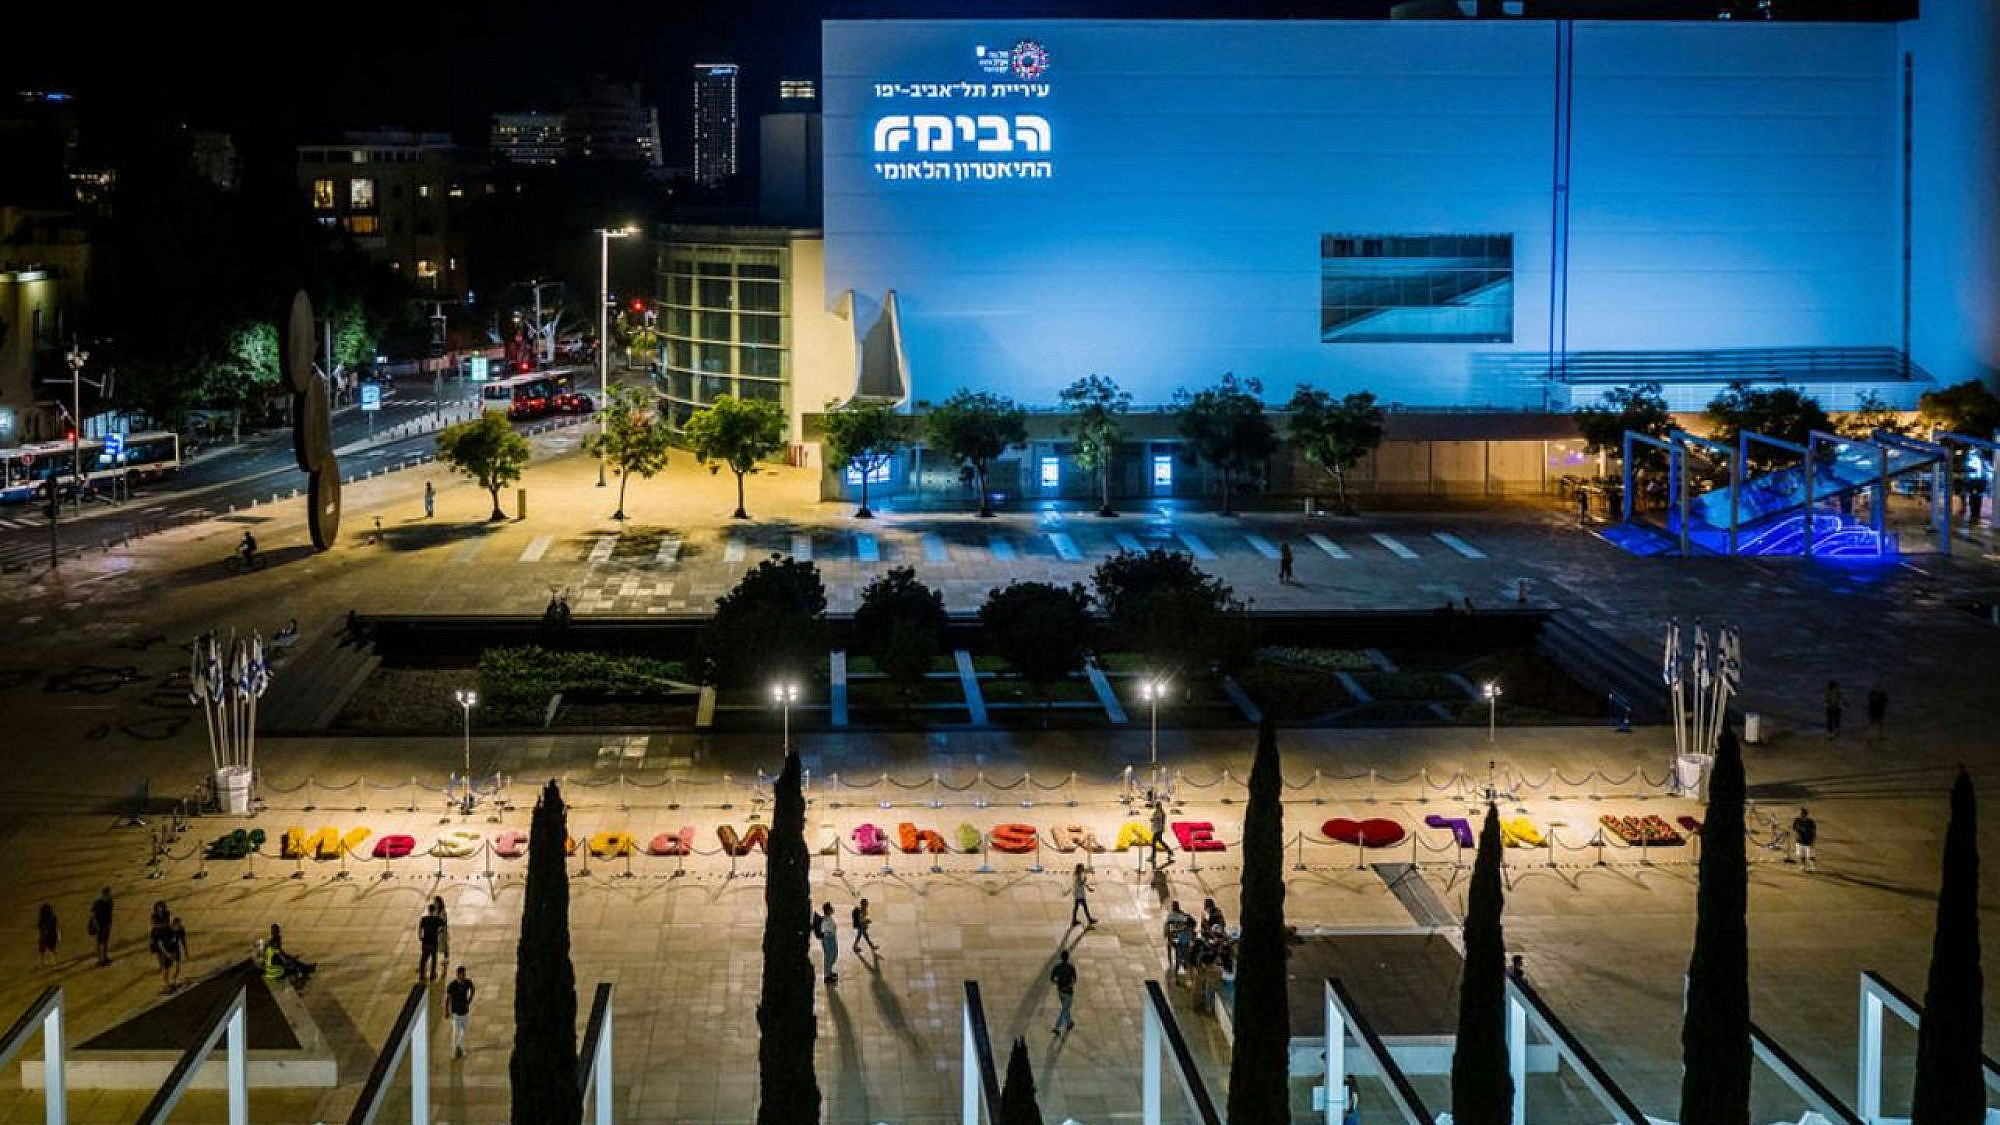 מקום לדאגה. תיאטרון הבימה בסופ"ש, על רקע מיצב "אנשי הפרחים" בכיכר התרבות בתל אביב (צילום: CRS רועי ארמה)